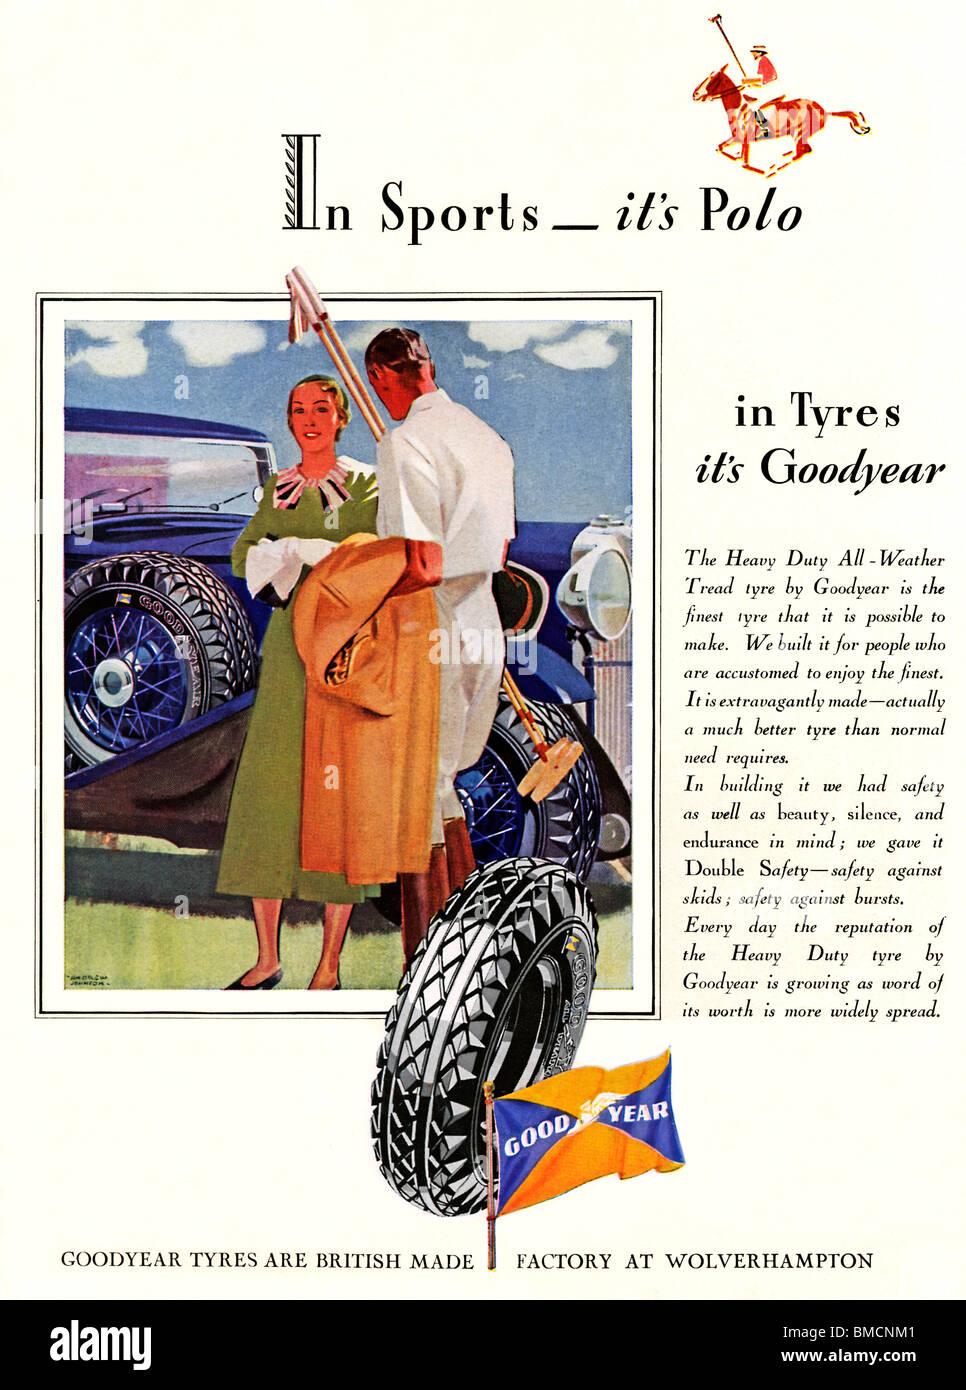 Pneumatici Goodyear, Polo, 1934 Inglese spot per la vettura americana pneumatici una sistemazione equestre tema sportivo Foto Stock